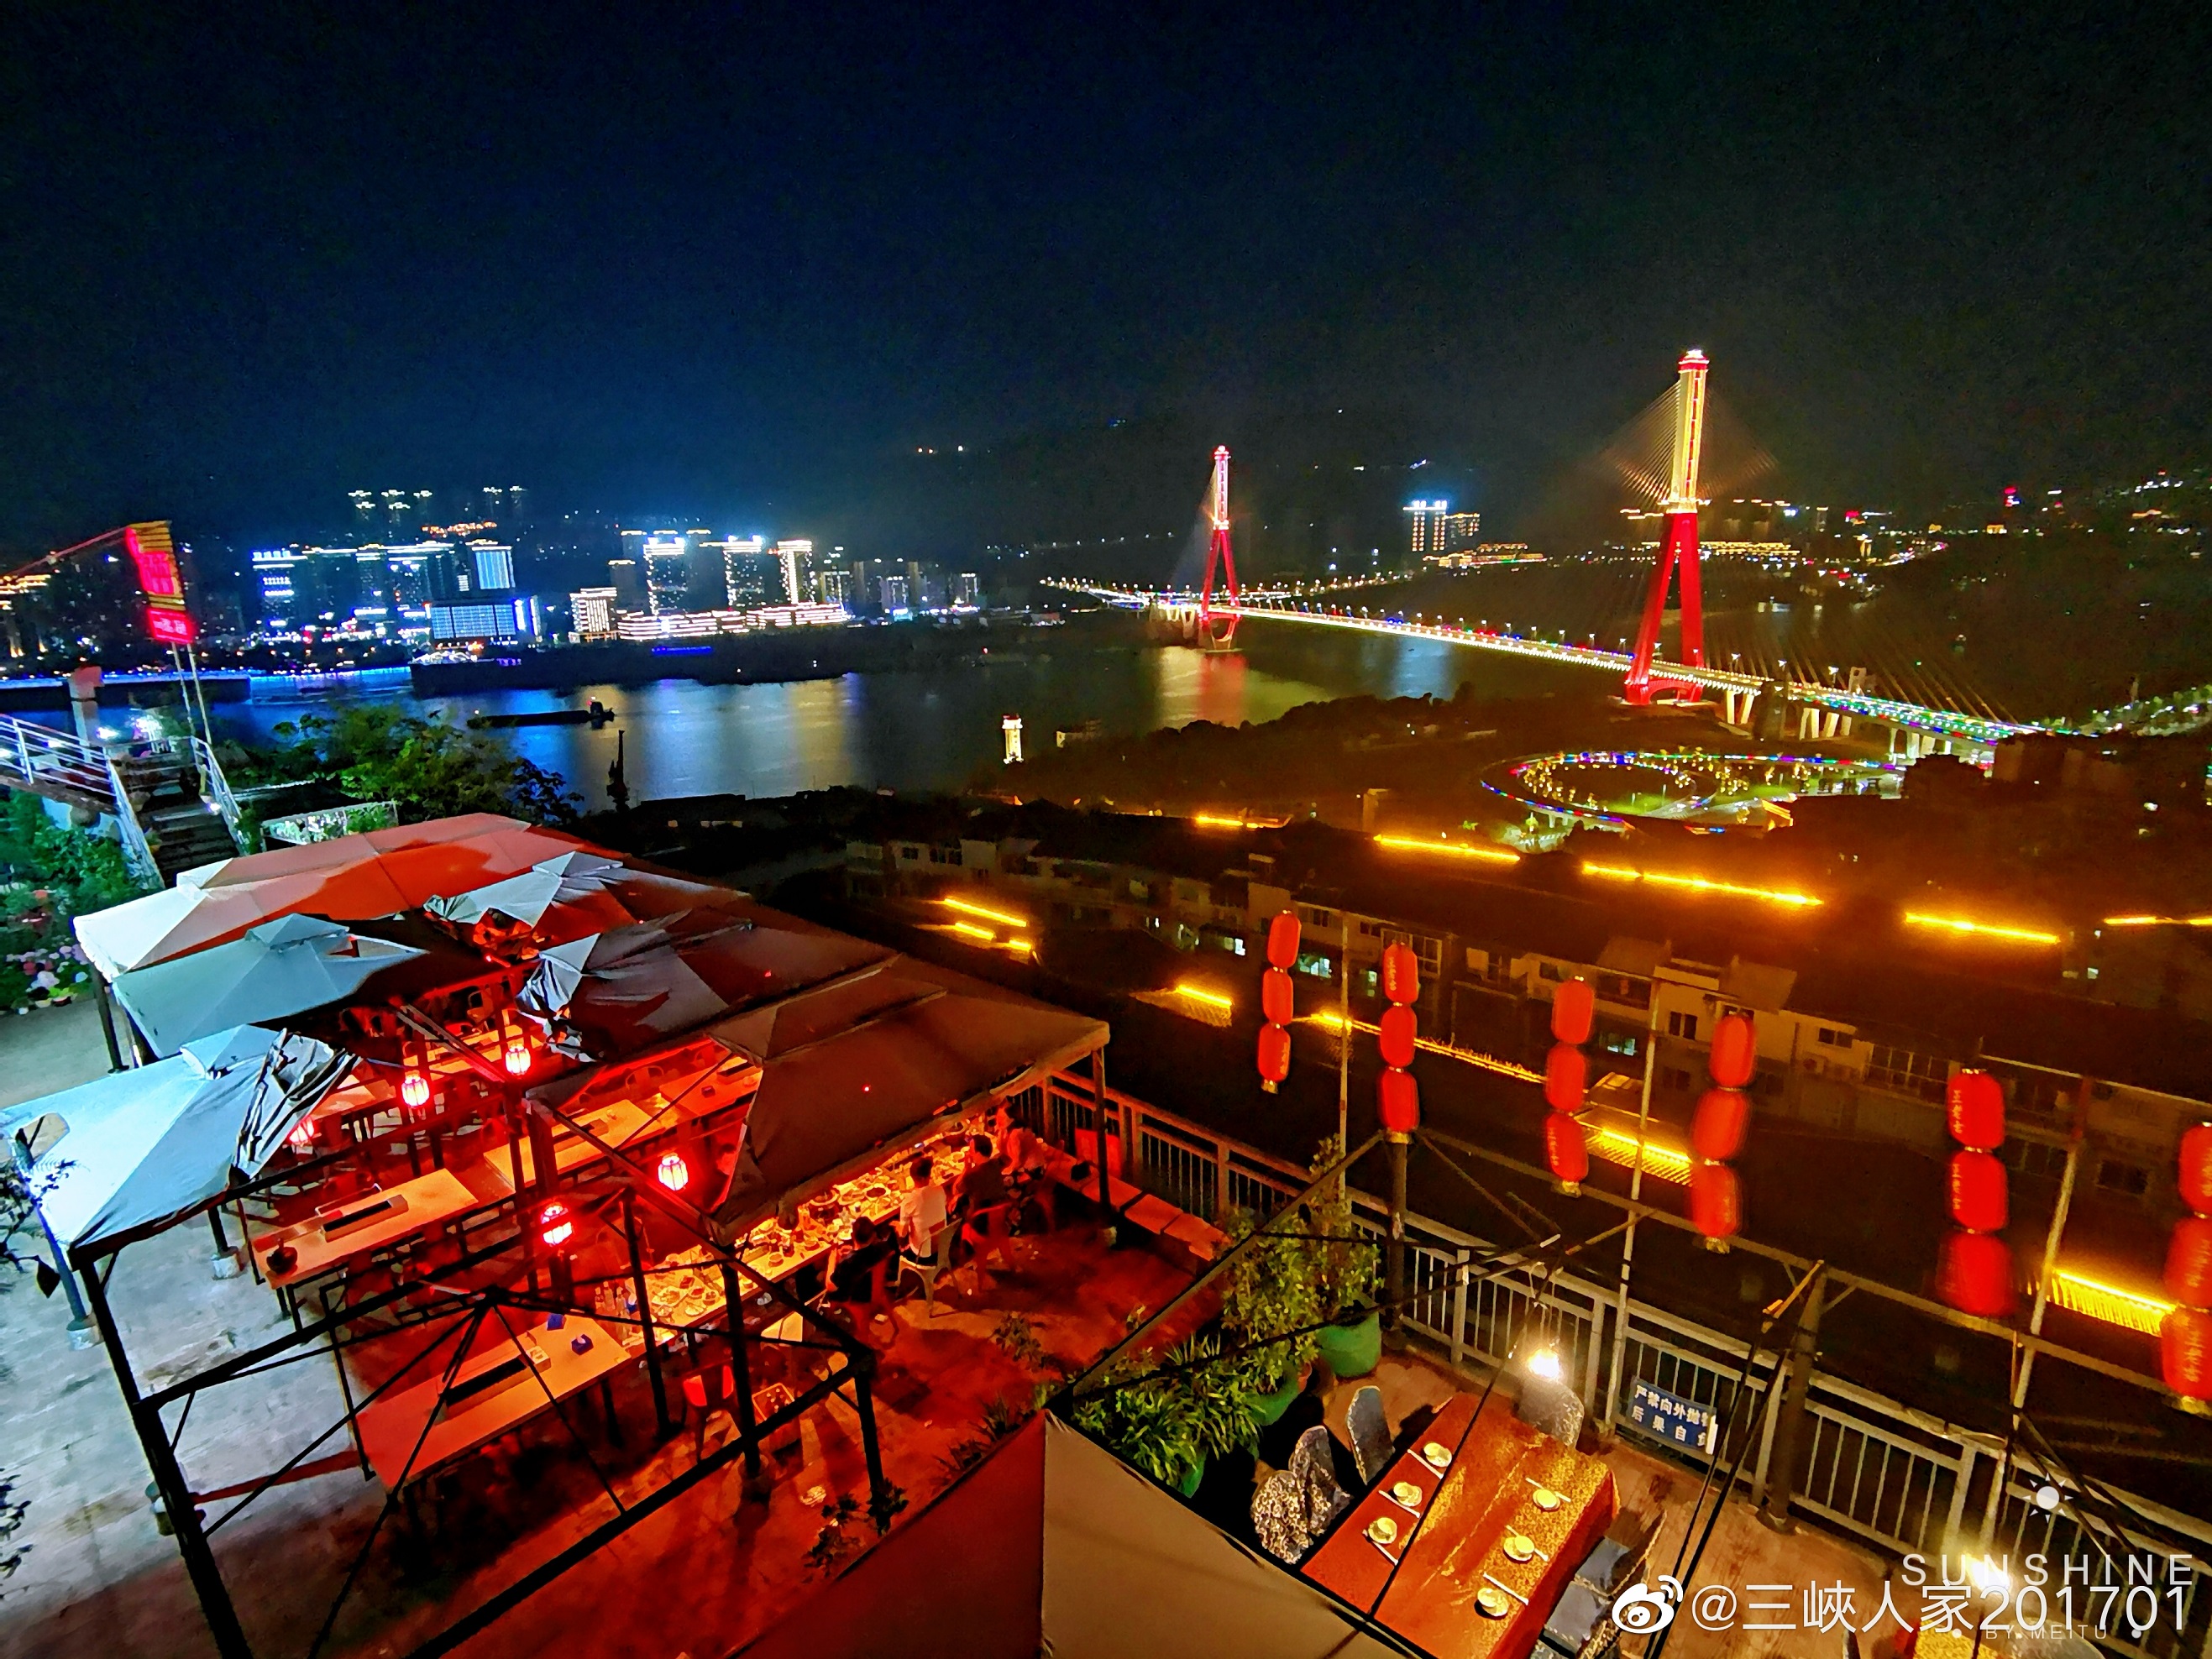 牌楼长江大桥车水马龙，万州夜色美。